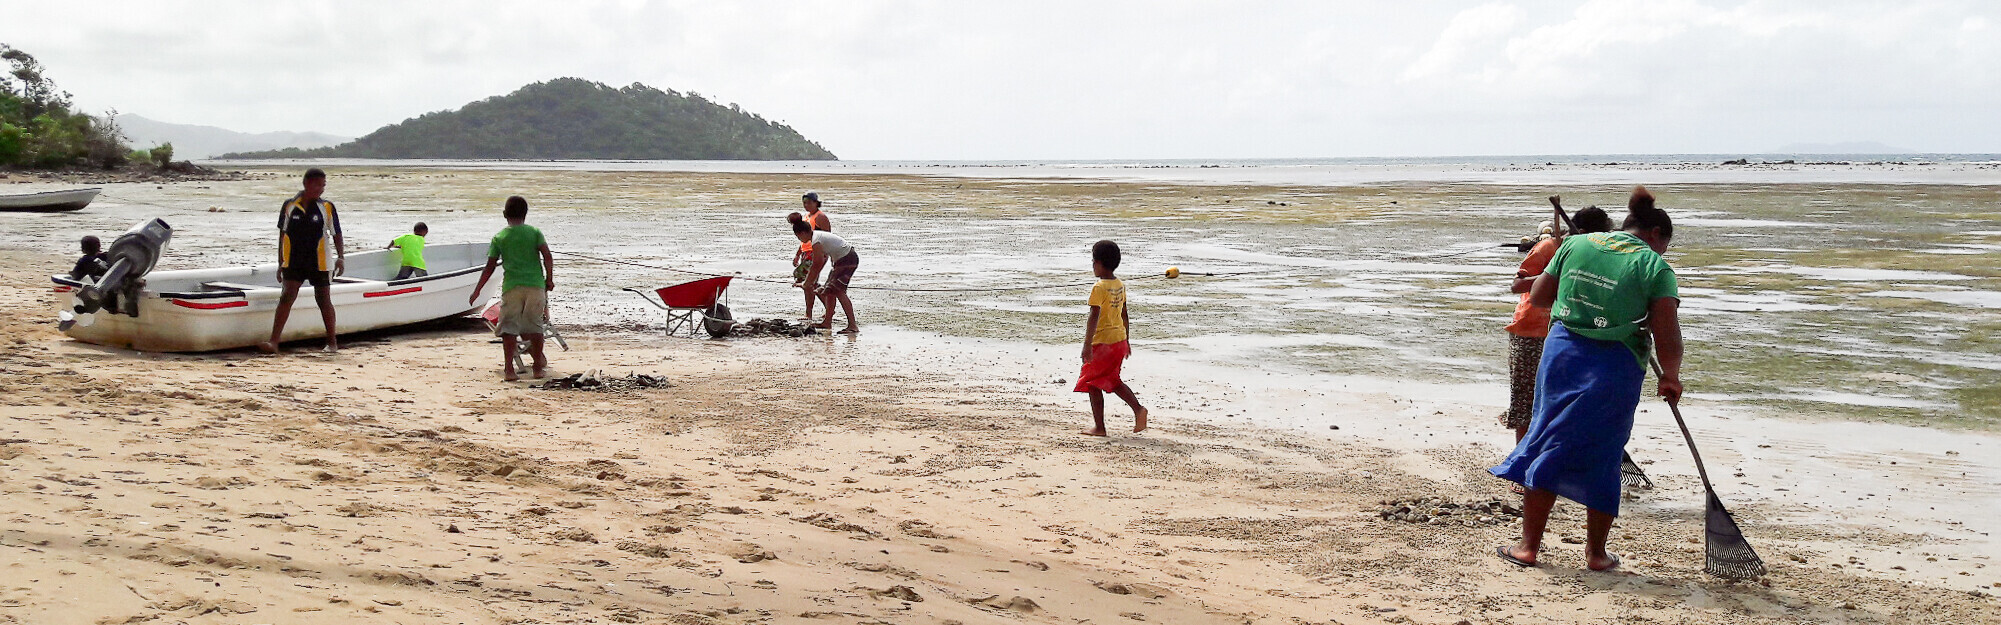 Menschen aus Fidschi, einem Land Ozeaniens, bei der Reinigung des Strandes